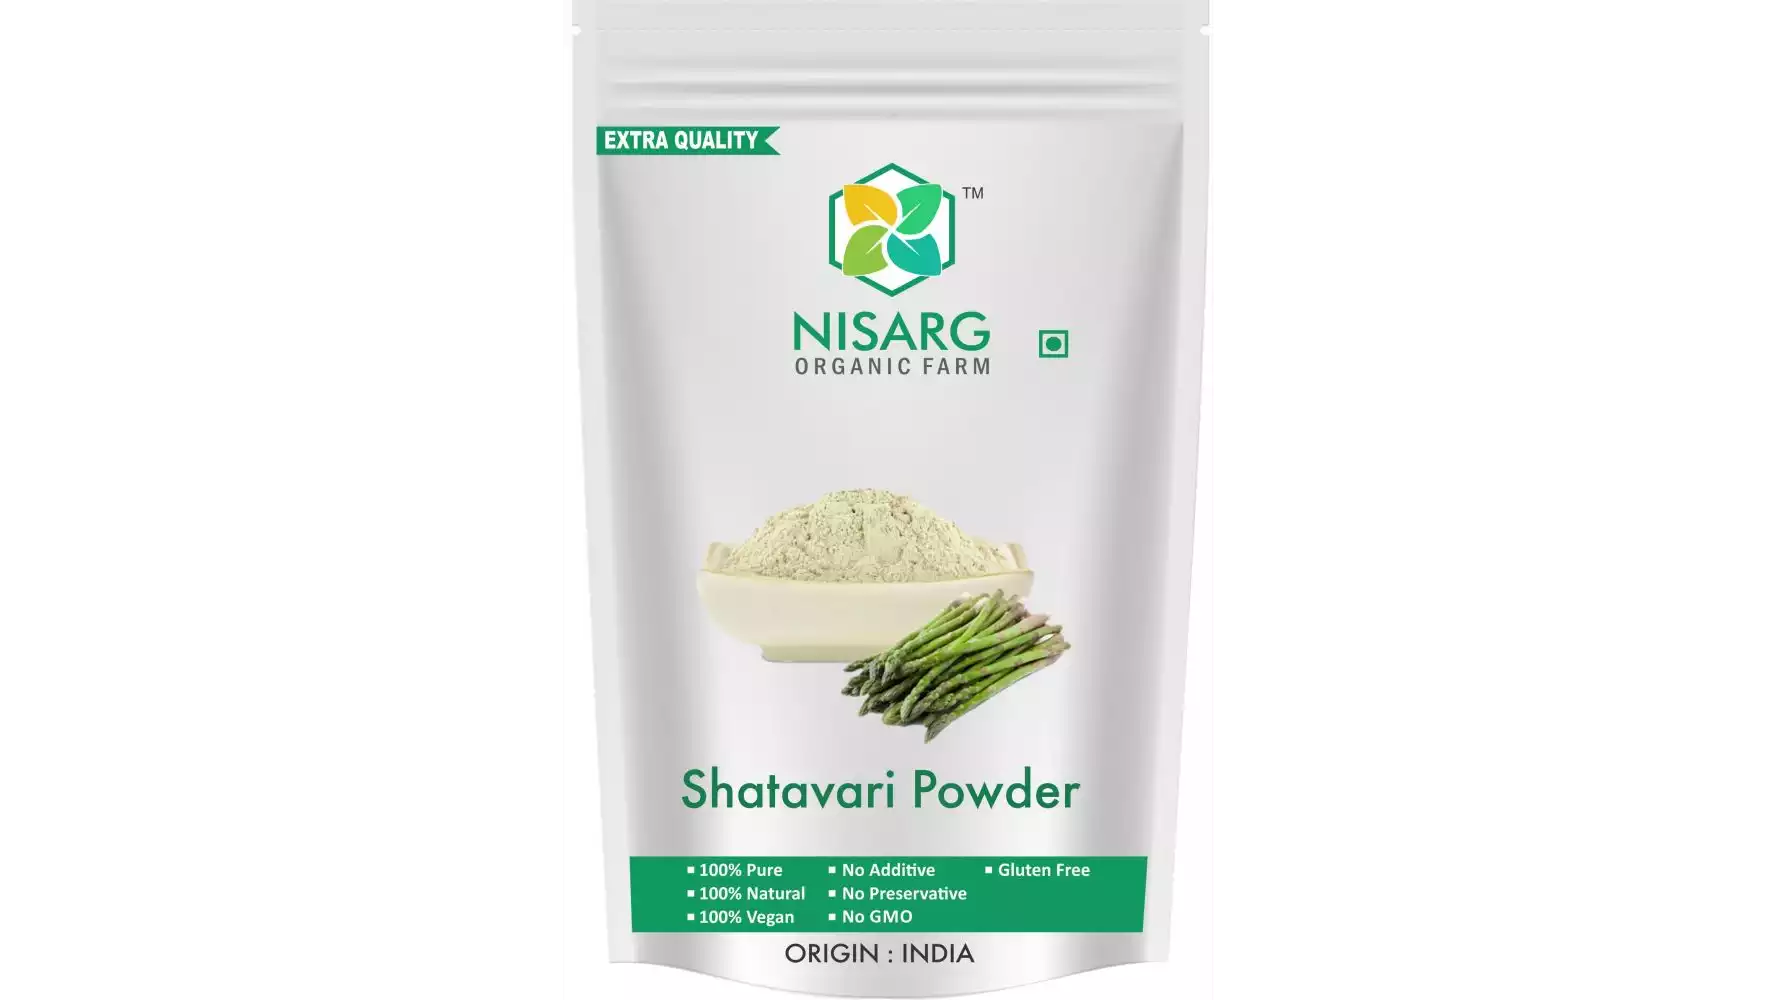 Nisarg Organic Farm Shatavari Powder (1kg)